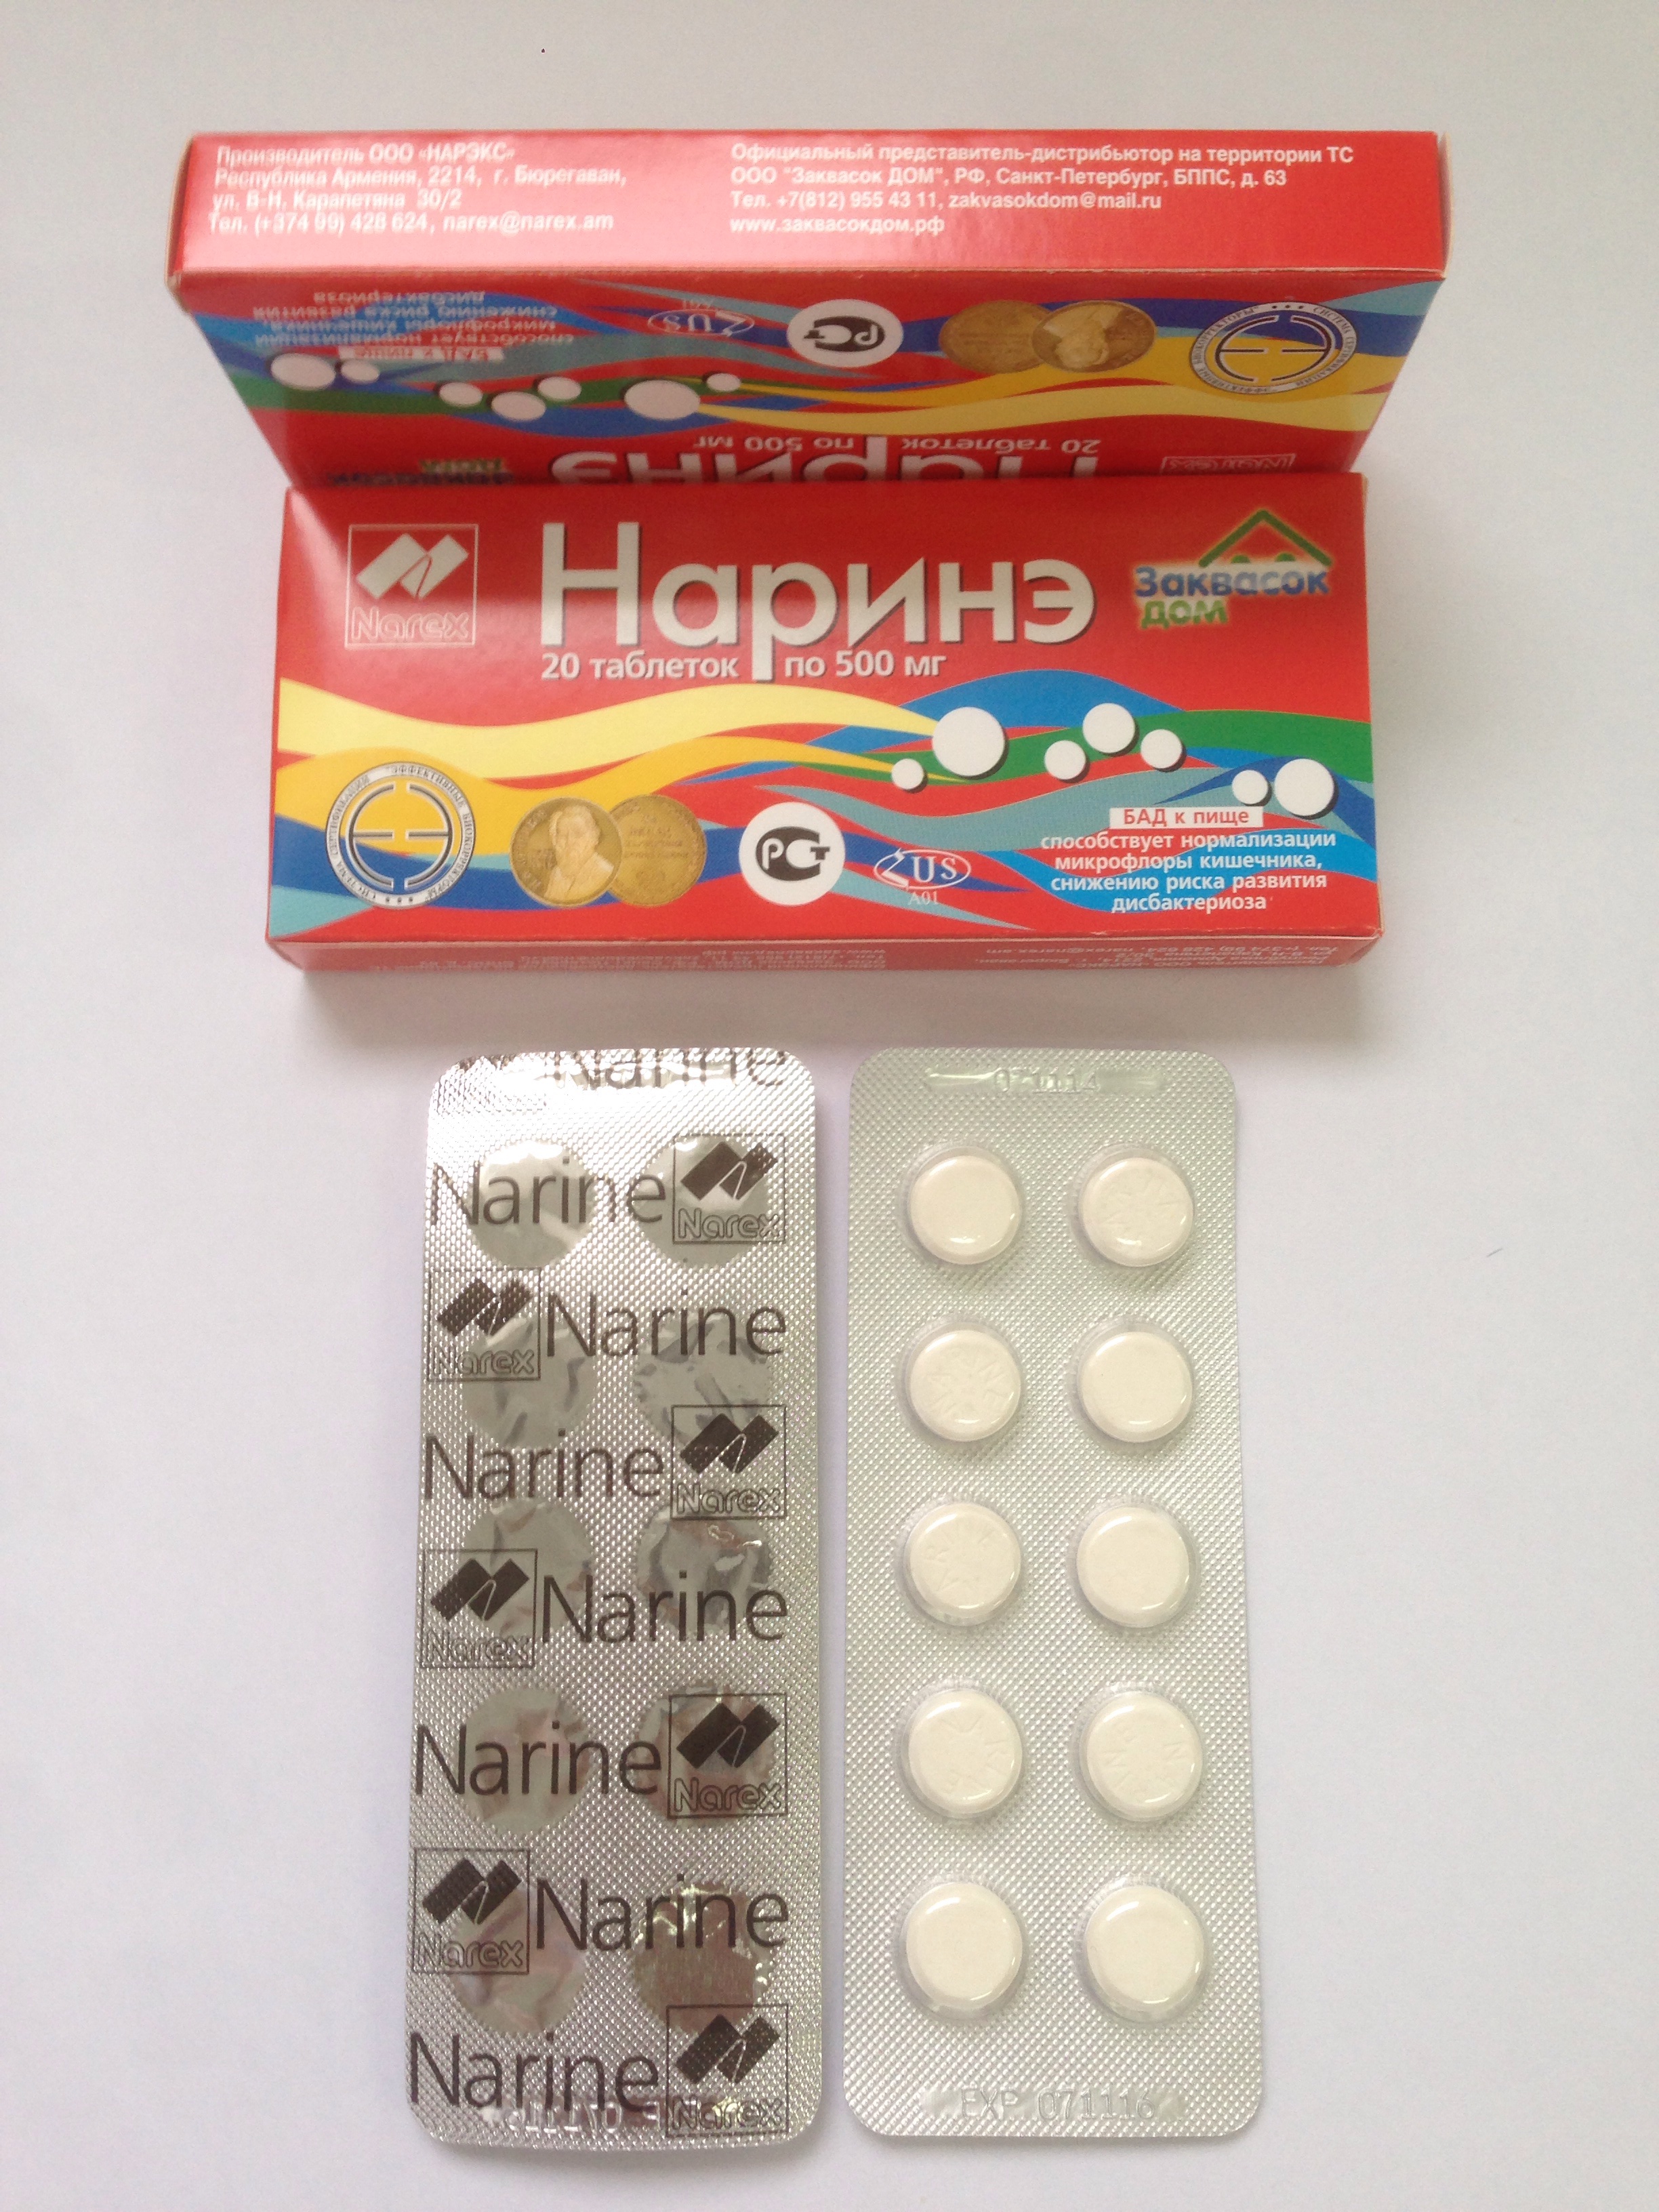 Наринэ, 1 упаковка
20 таблеток по 500 мг
